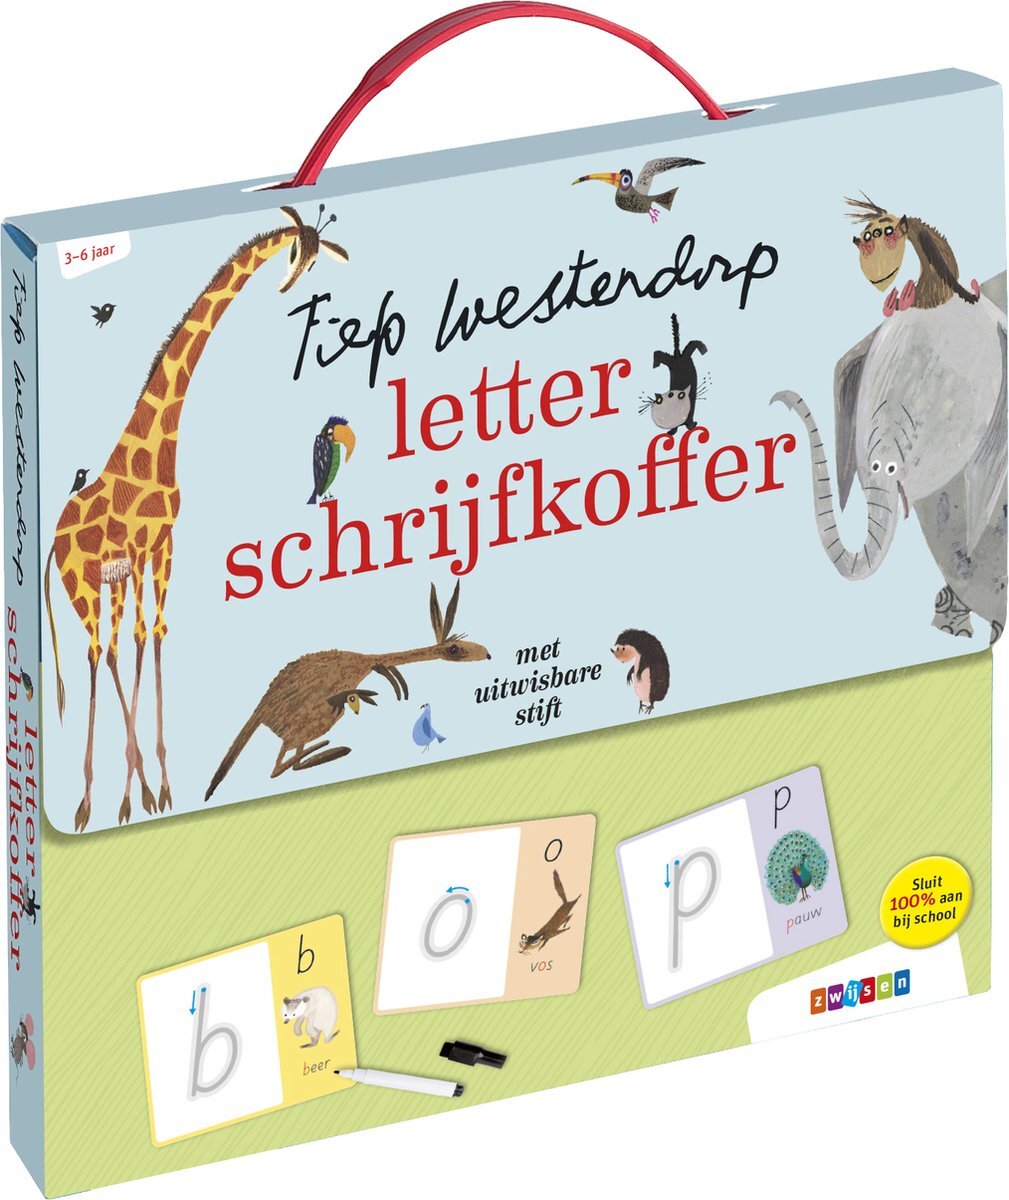 Zwijsen Uitgeverij Fiep Westendorp letter schrijfkoffer